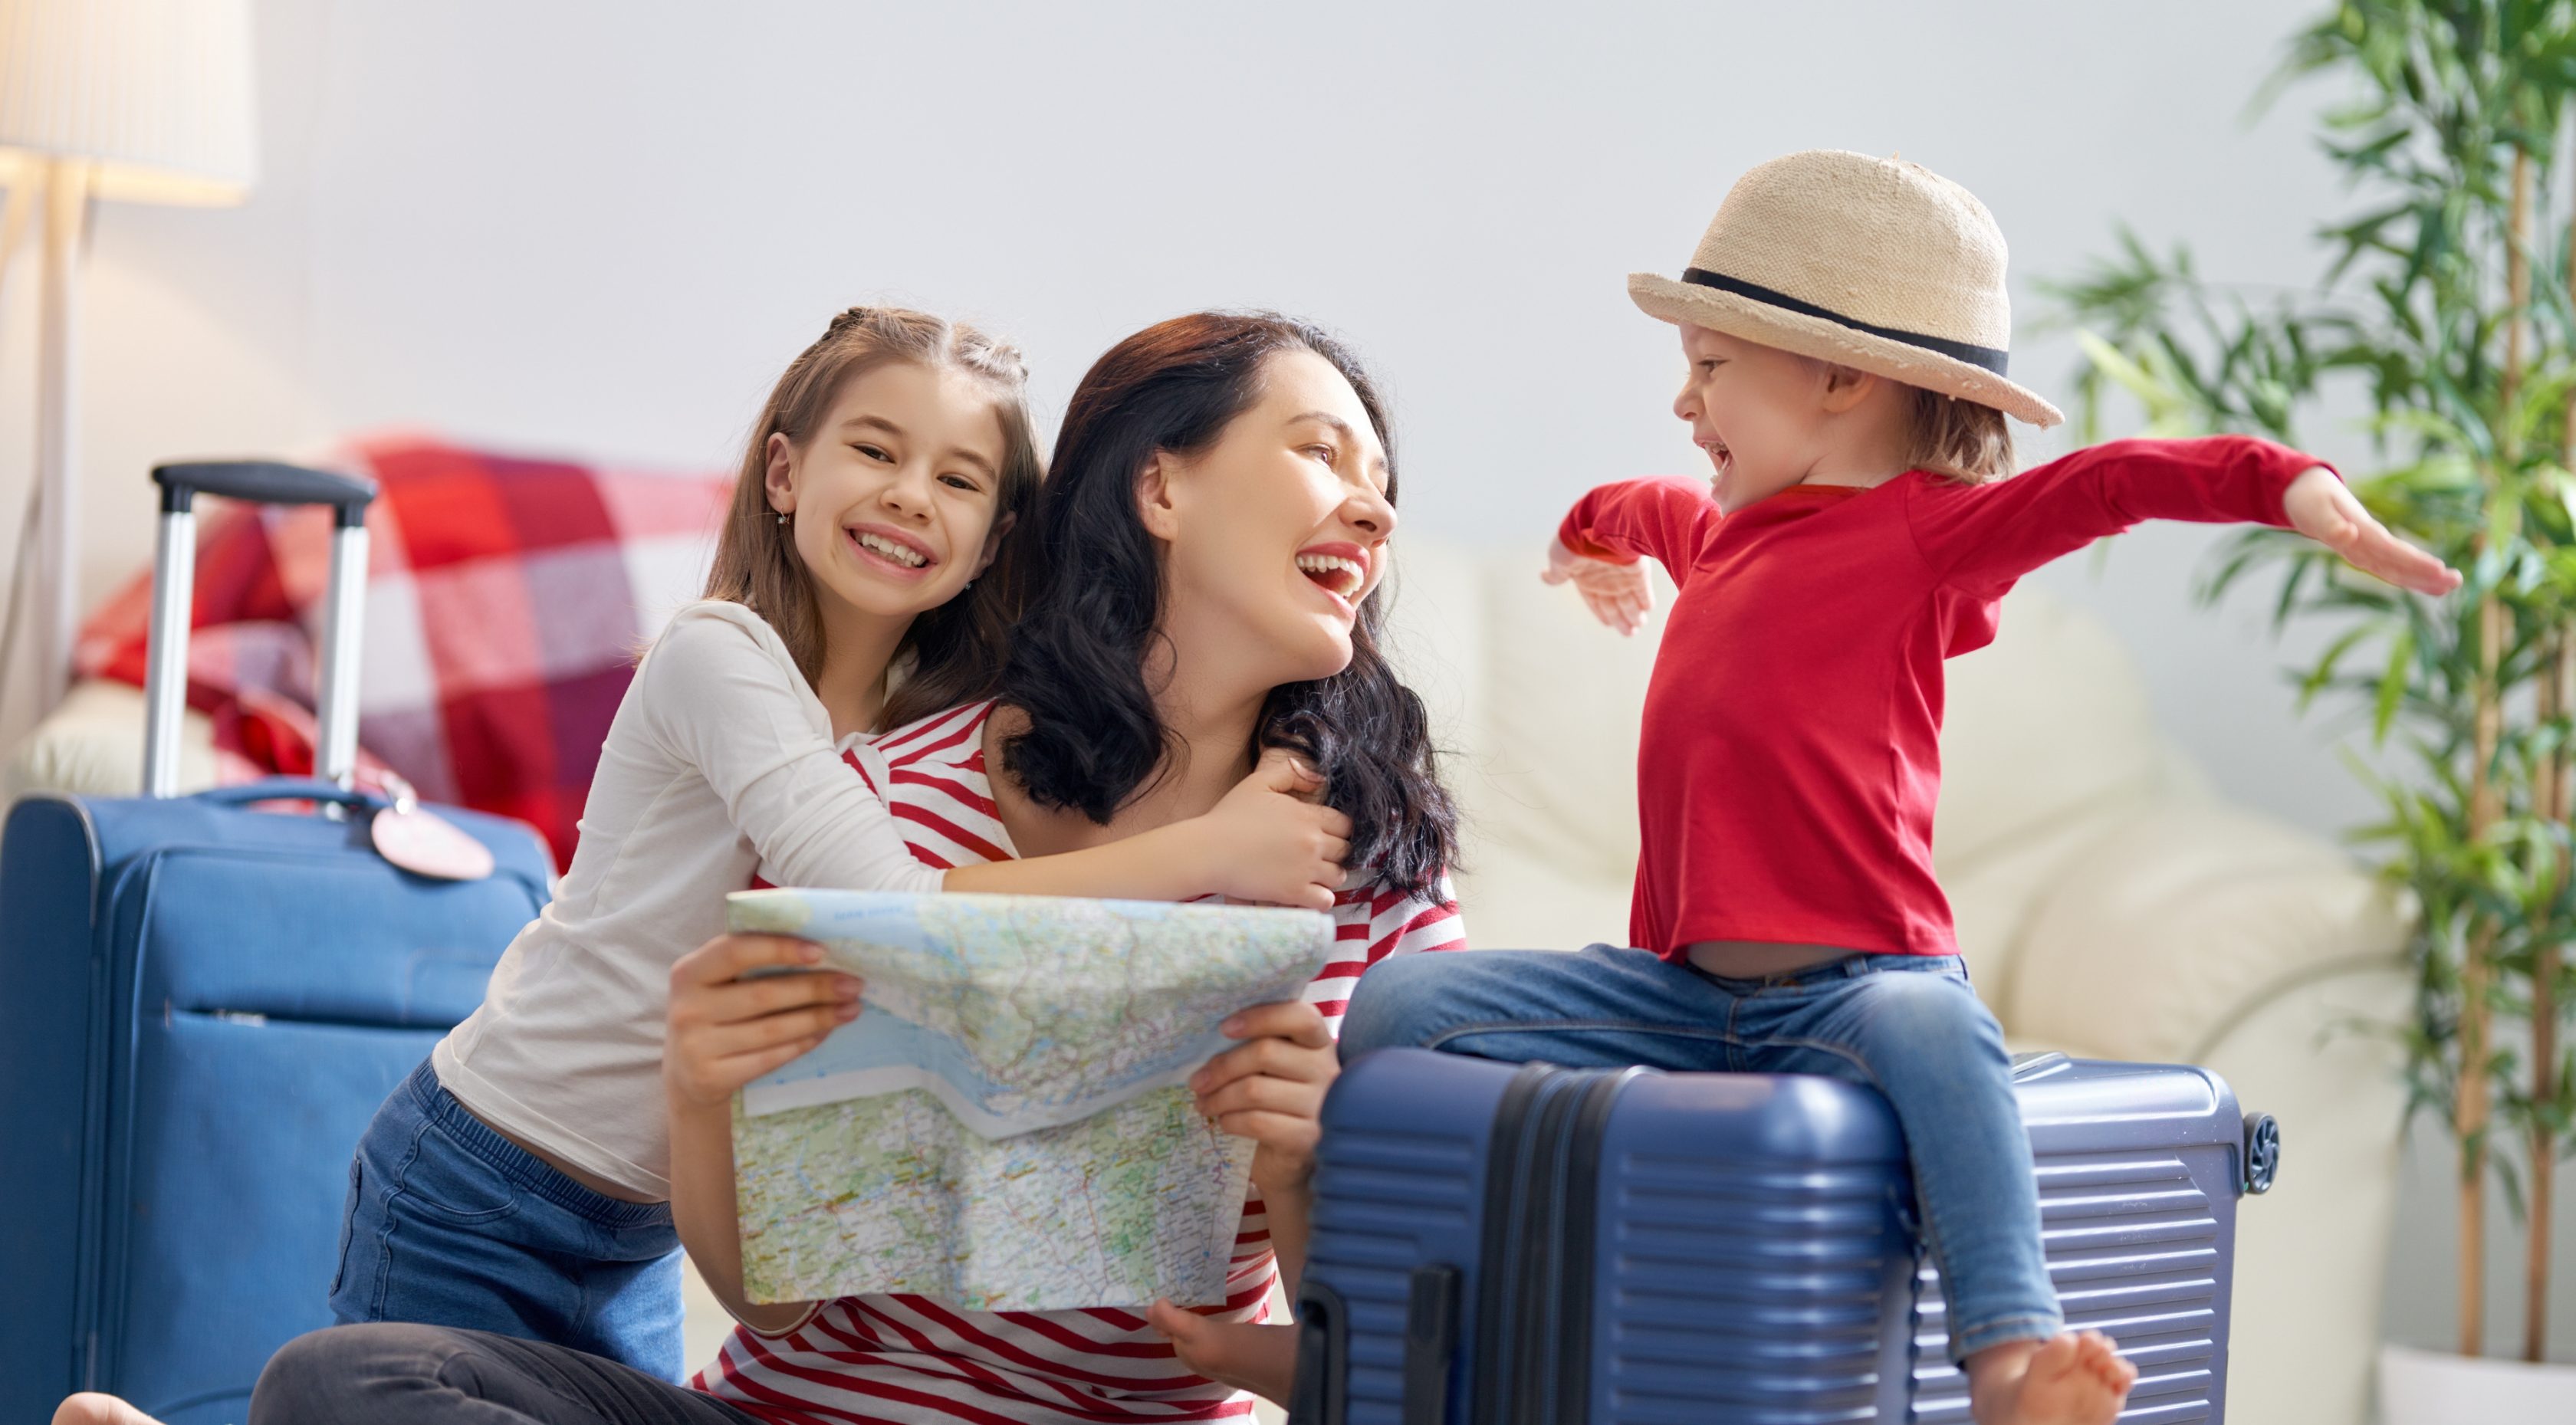 Μια χαρούμενη οικογένεια προετοιμάζεται για το ταξίδι. Η μαμά και οι κόρες της φτιάχνουν τις βαλίτσες τους και κοιτάνε τον χάρτη.